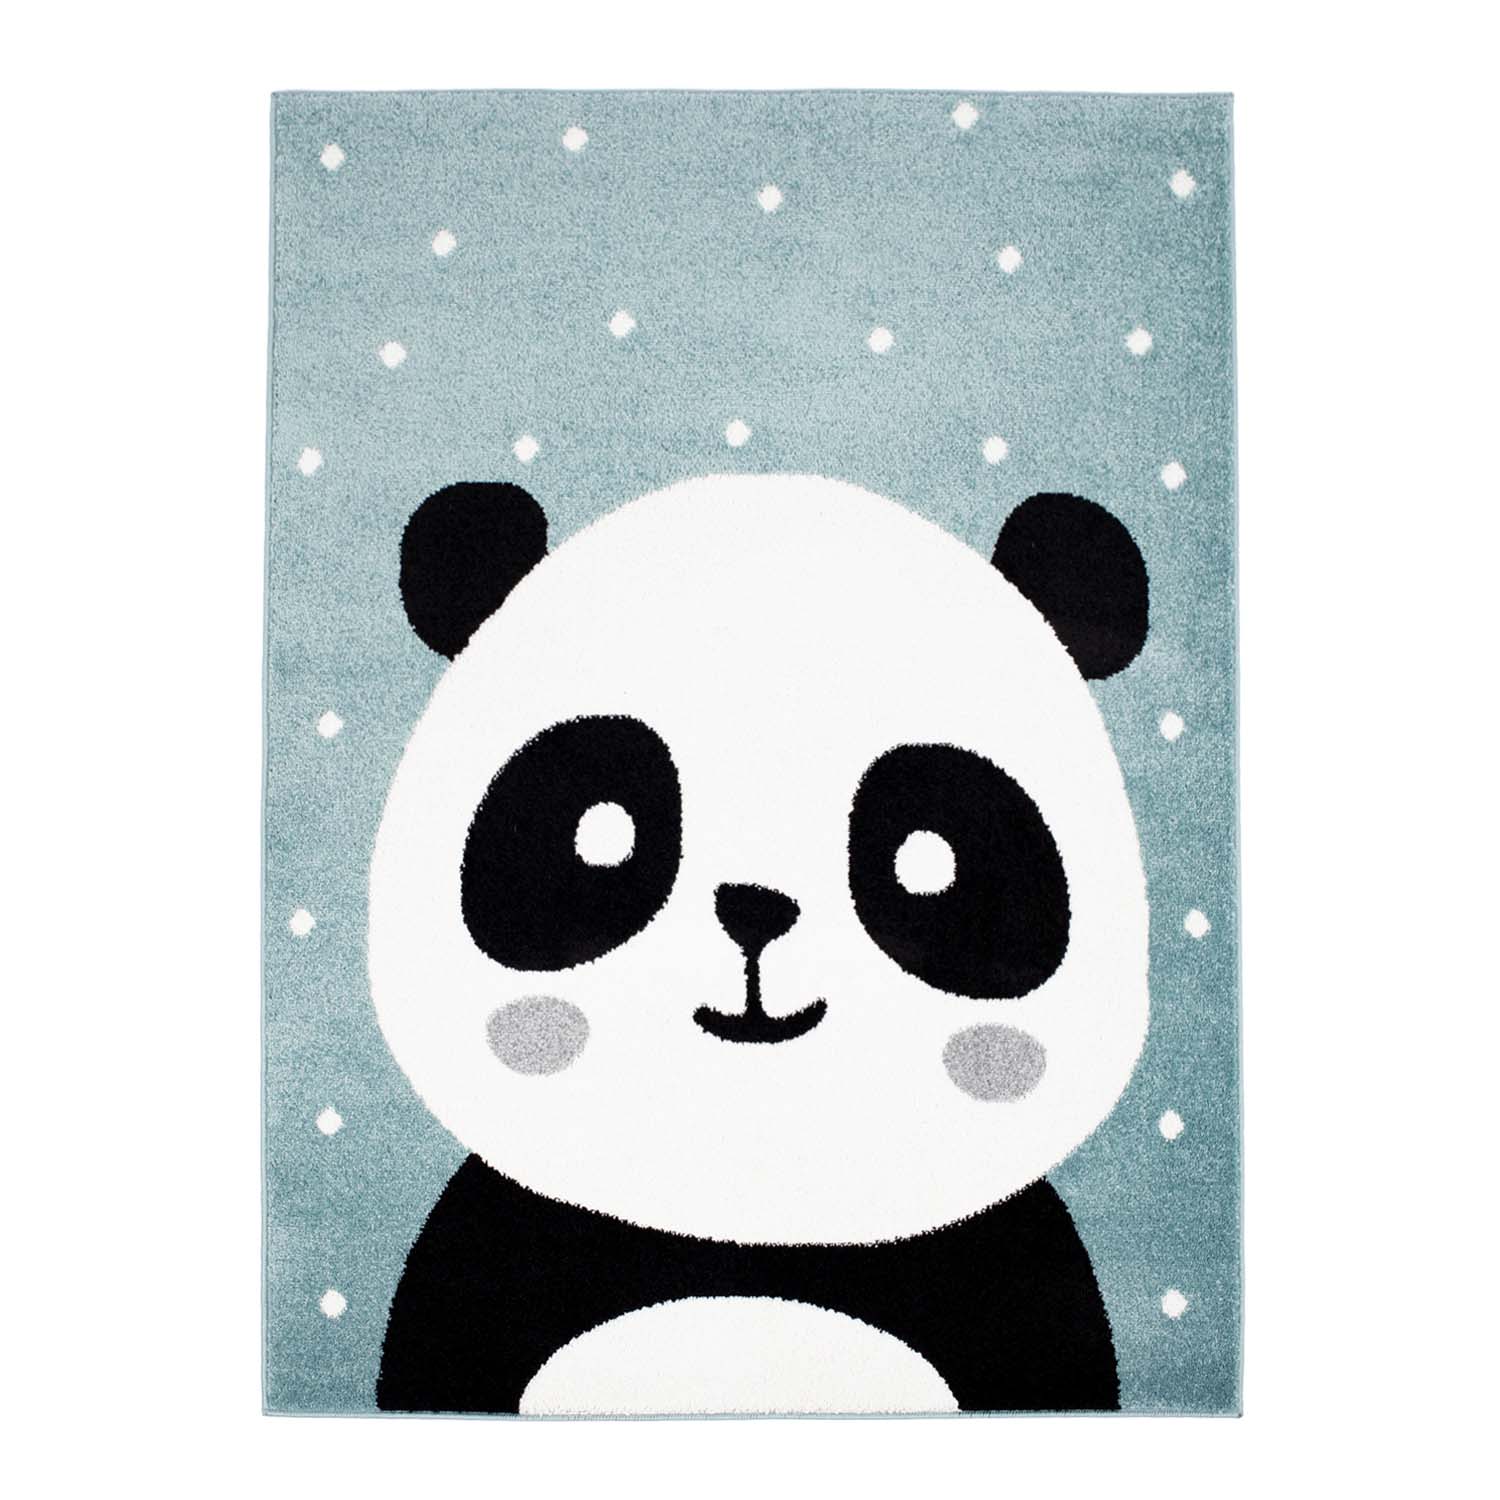 Teppiche für das Kinderzimmer
Kinderteppich
für junge Mädchen mit Tier Bubble Panda blau Panda